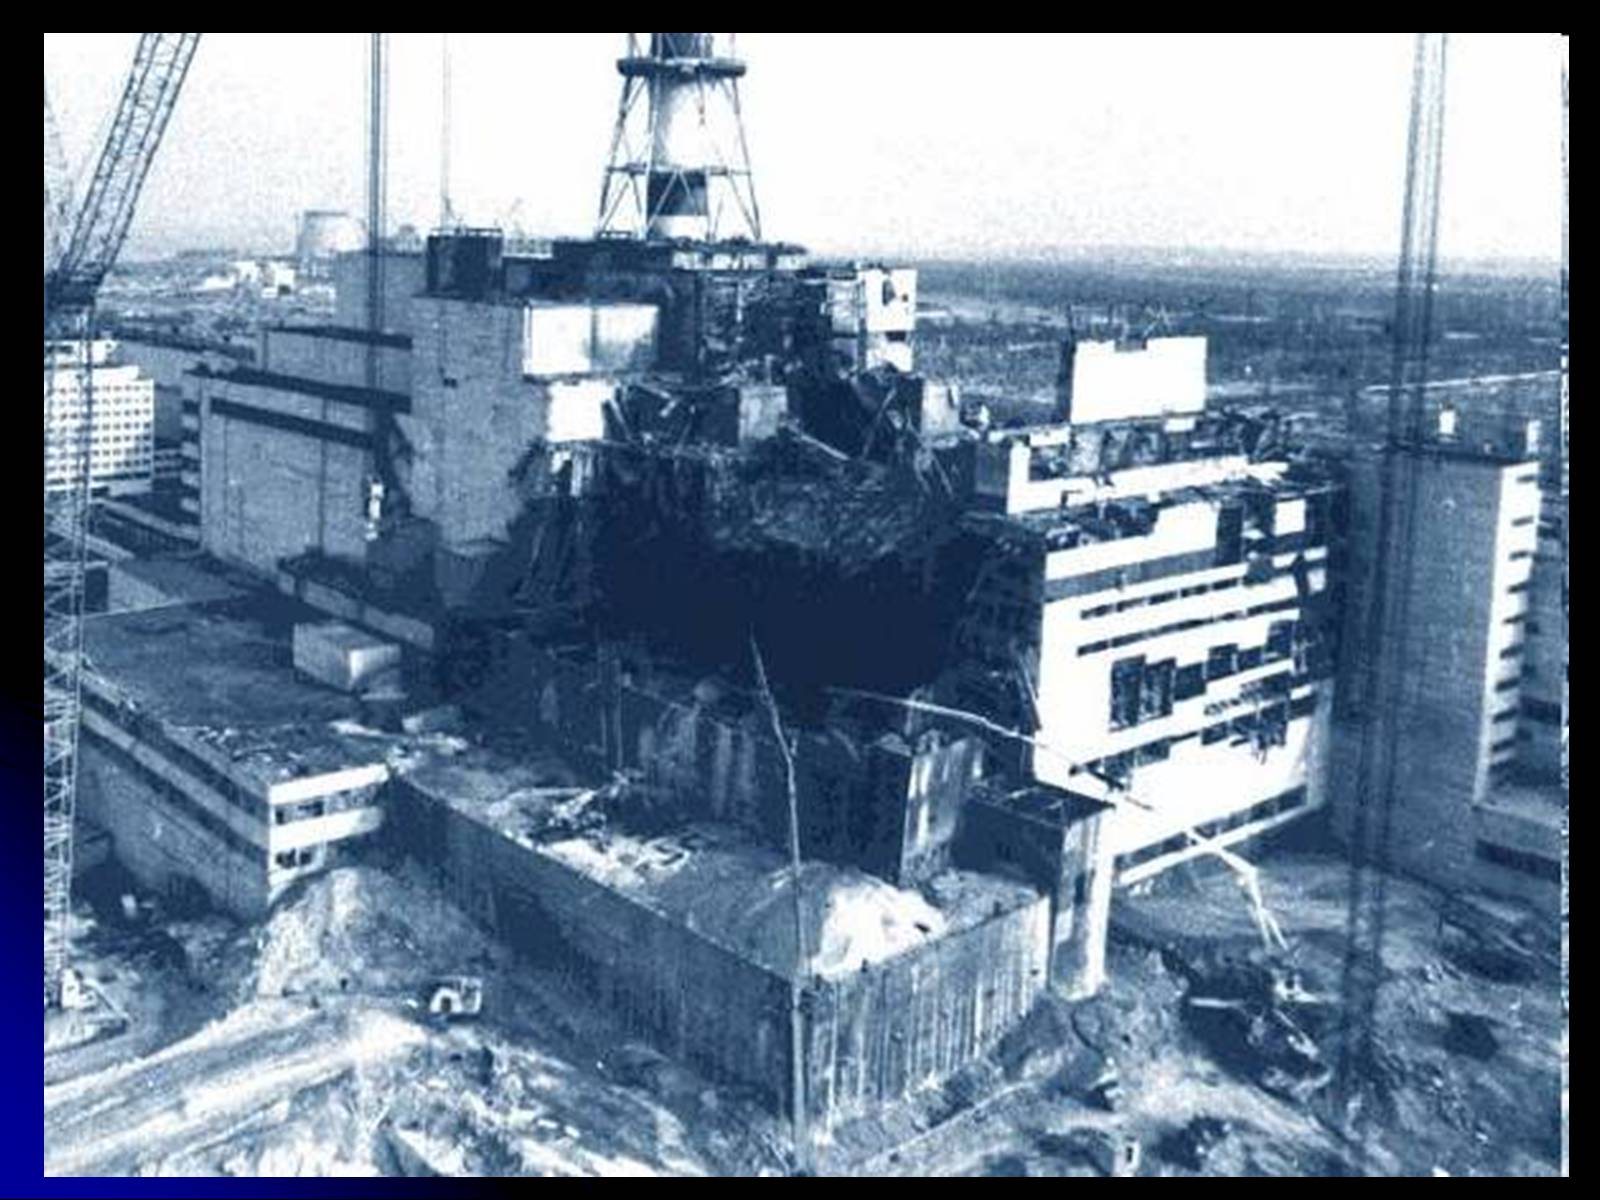 Сколько работала чернобыльская аэс после взрыва. Чернобыльская АЭС 1986. Чернобыльская АЭС 1986 реактор. 4 Энергоблок Чернобыльской АЭС 1986. Чернобыль 26.04.1986 взрыв.